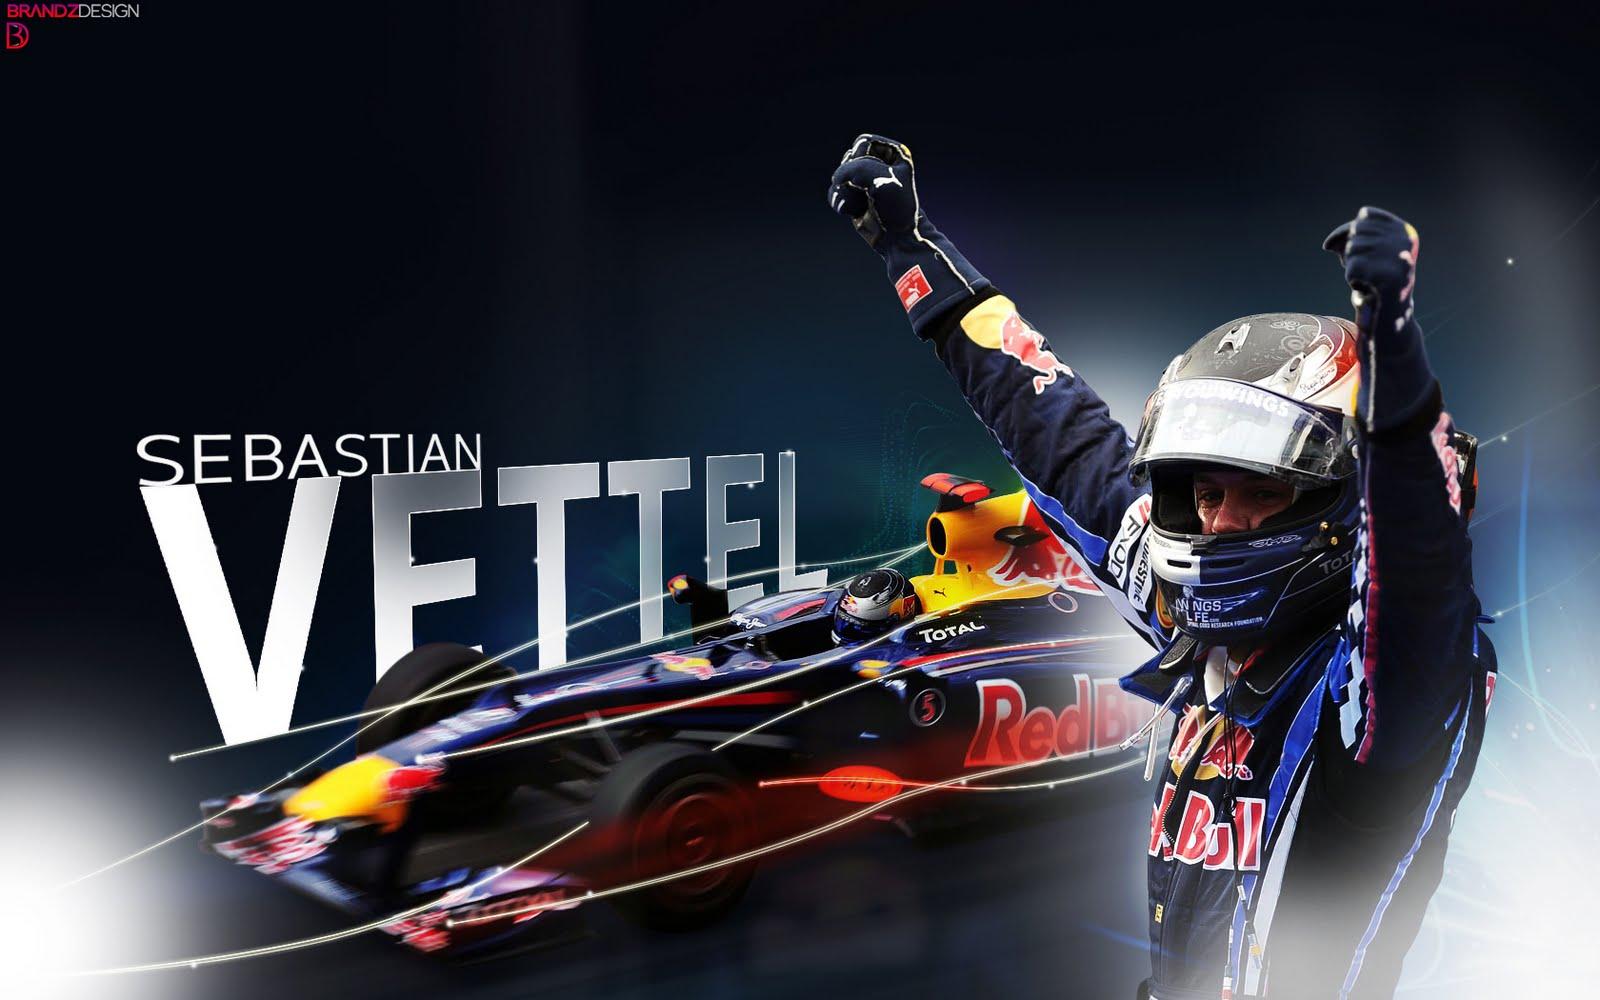 Lamenik: Sebastian Vettel Wallpaper 2011